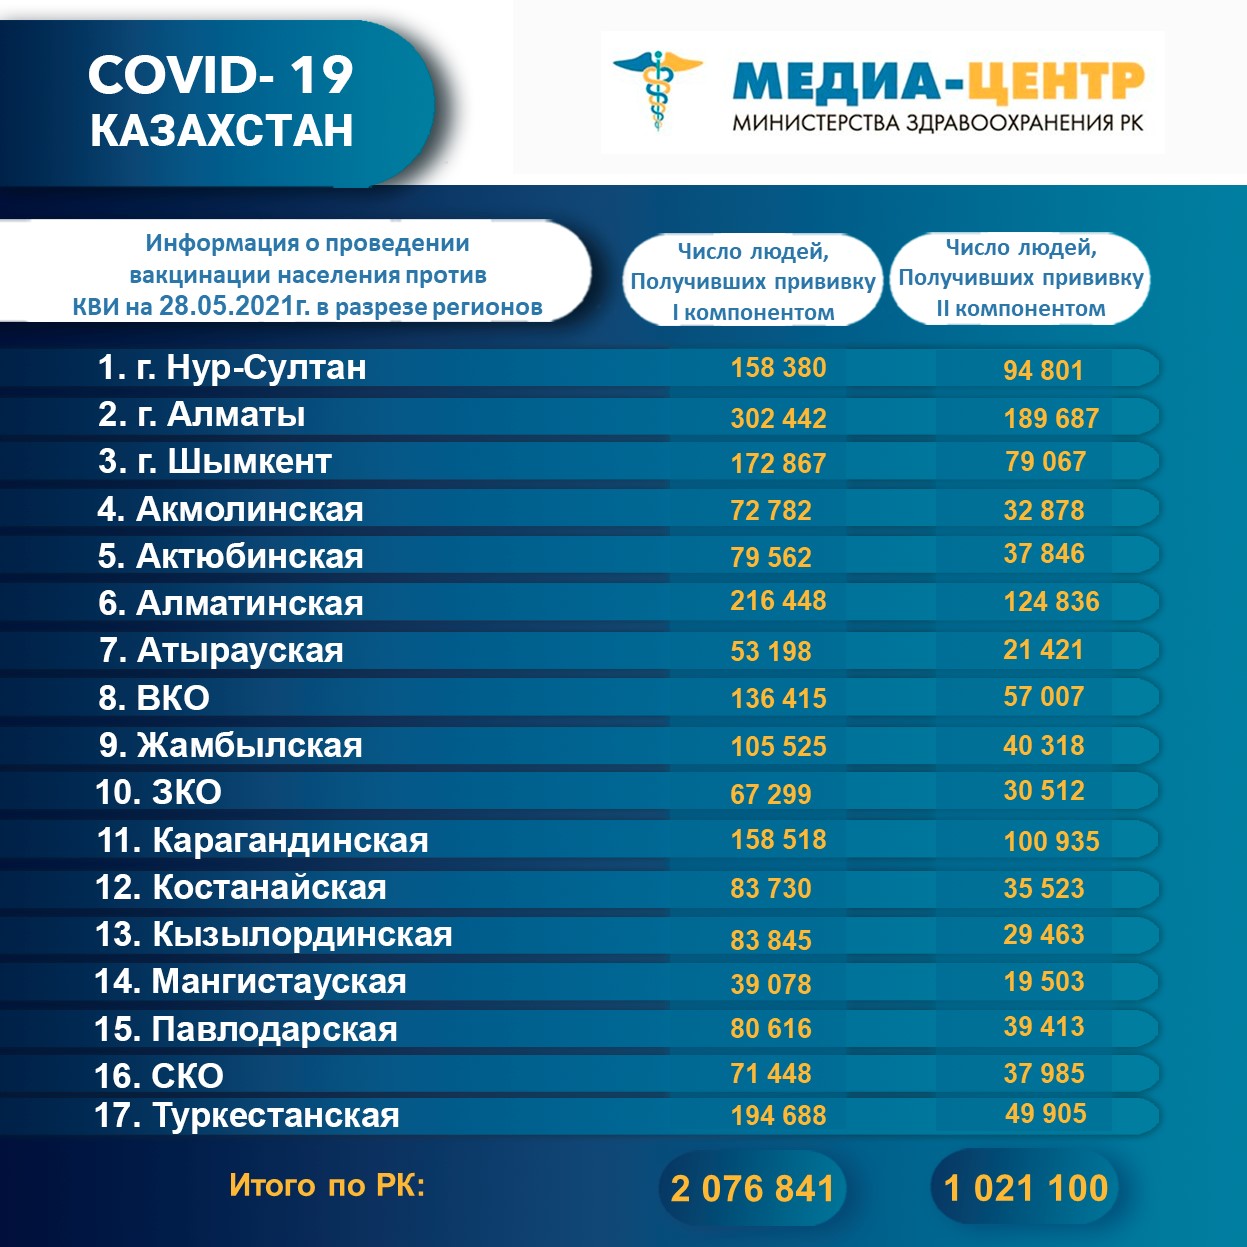 2 076 841 человек провакцинировано в Казахстане на 28 мая 2021 г